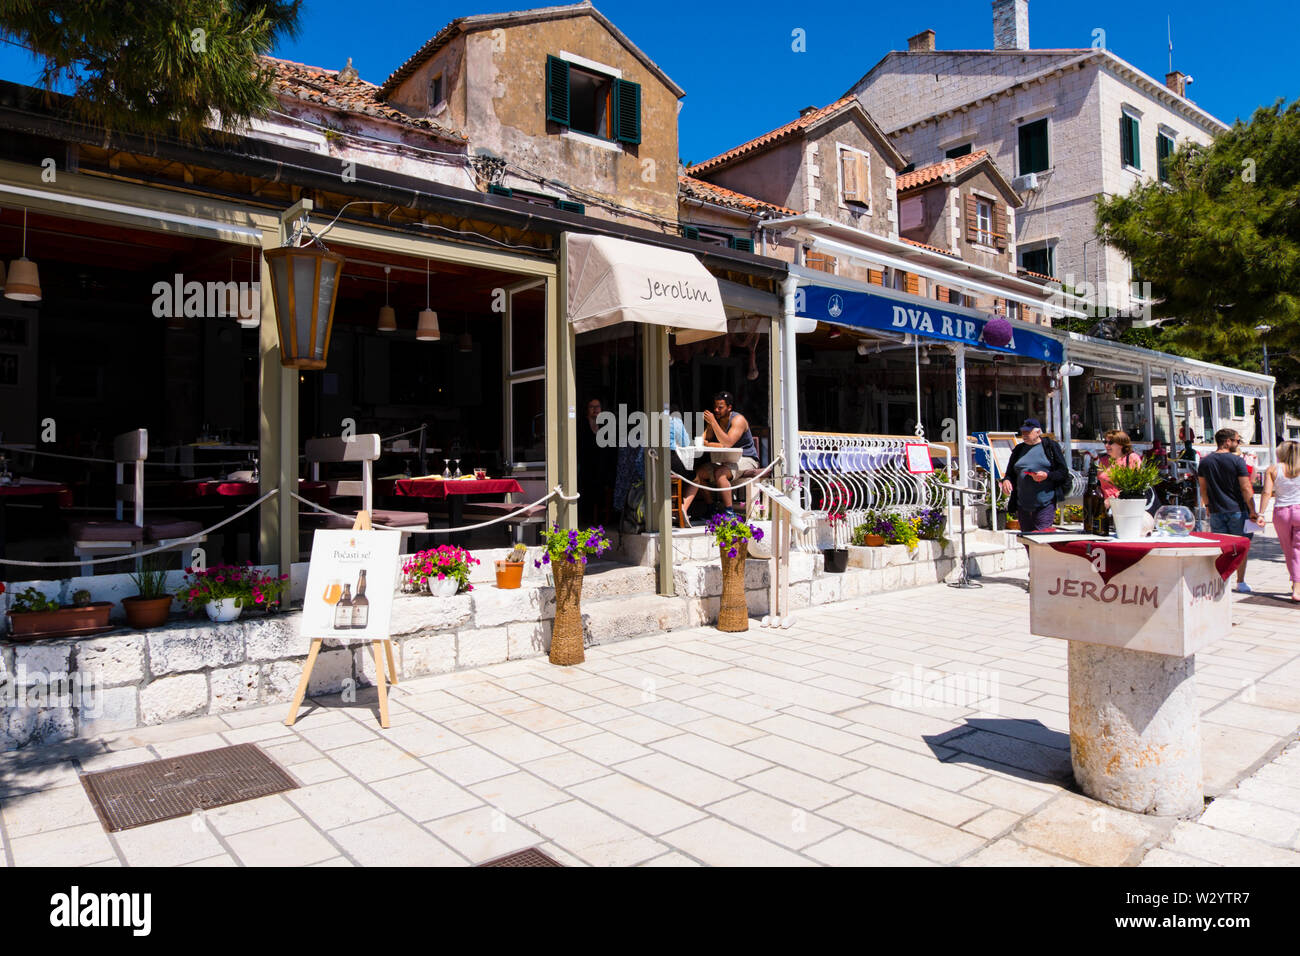 Fabrika, seaside promenade, Hvar town, Hvar island, Dalmatia, Croatia Stock Photo